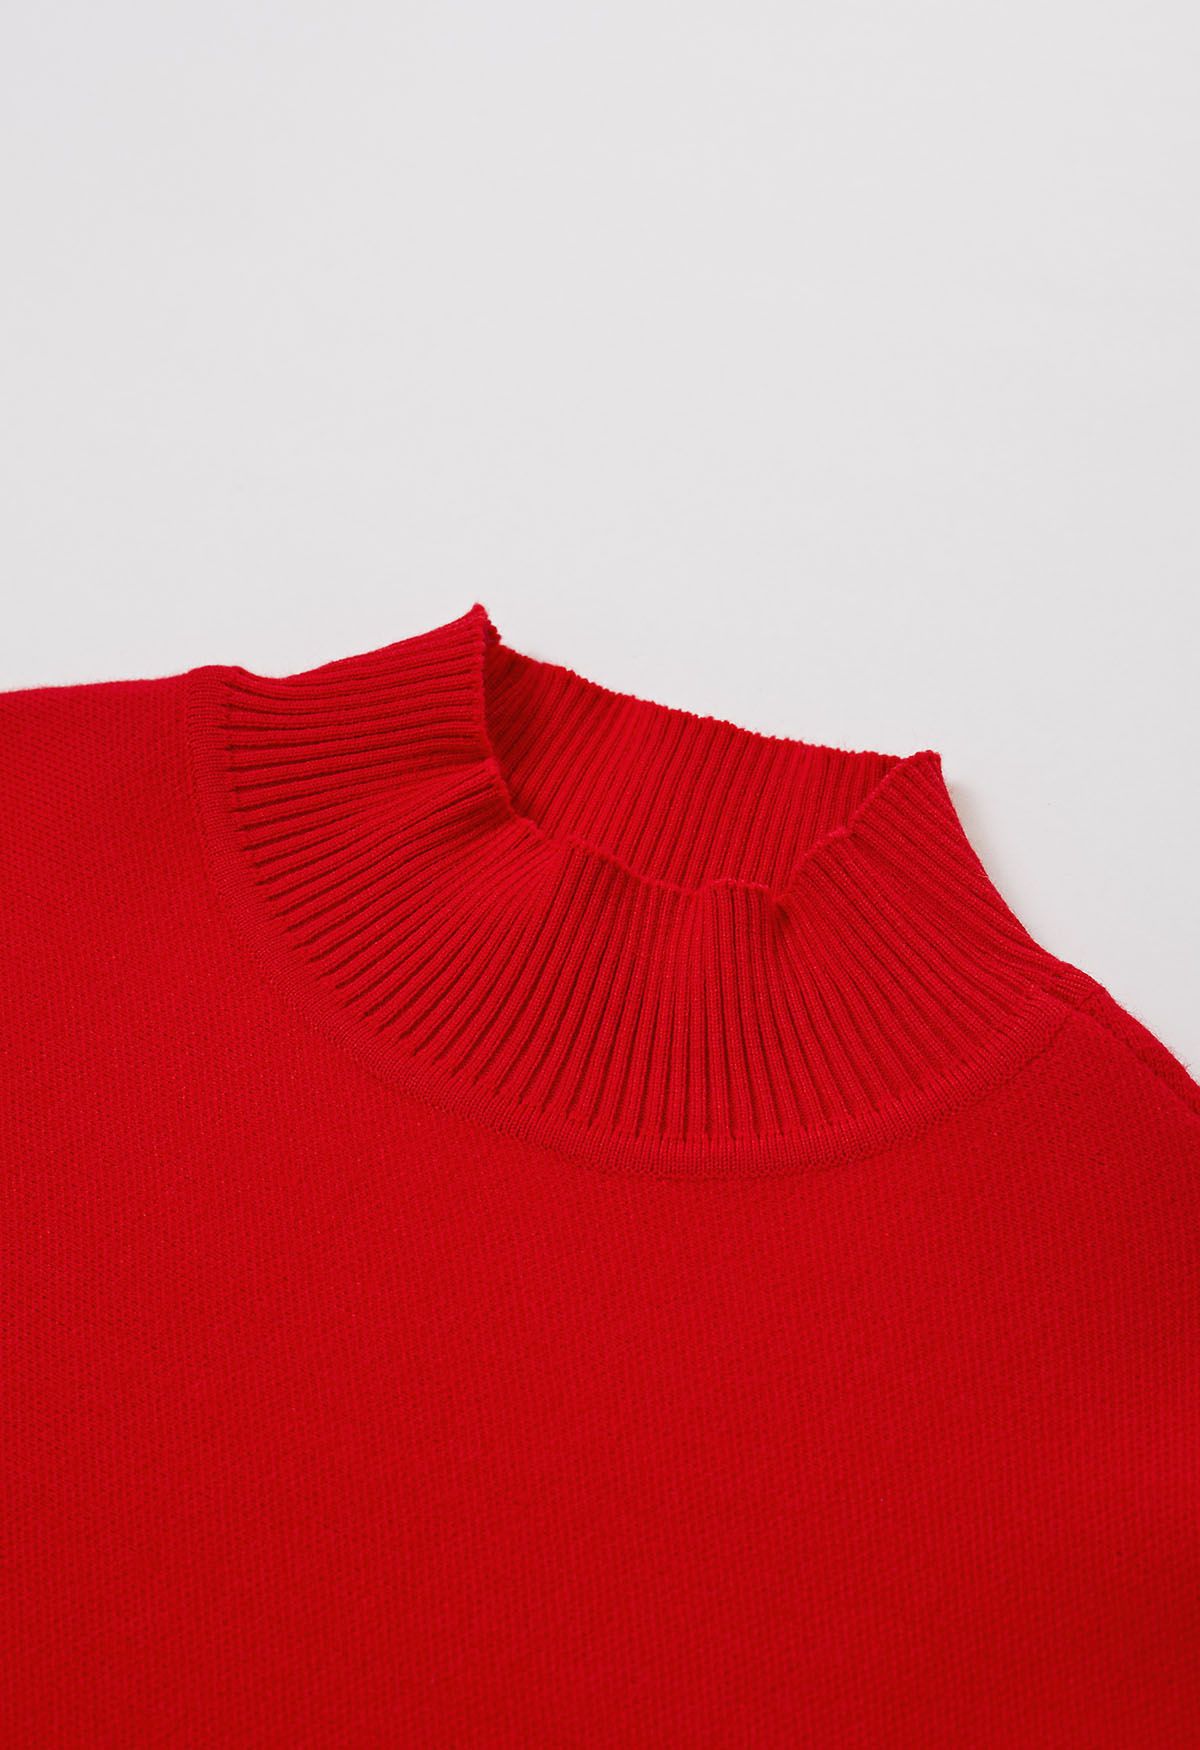 Faux Fur Sleeve Split Hem Knit Poncho in Red